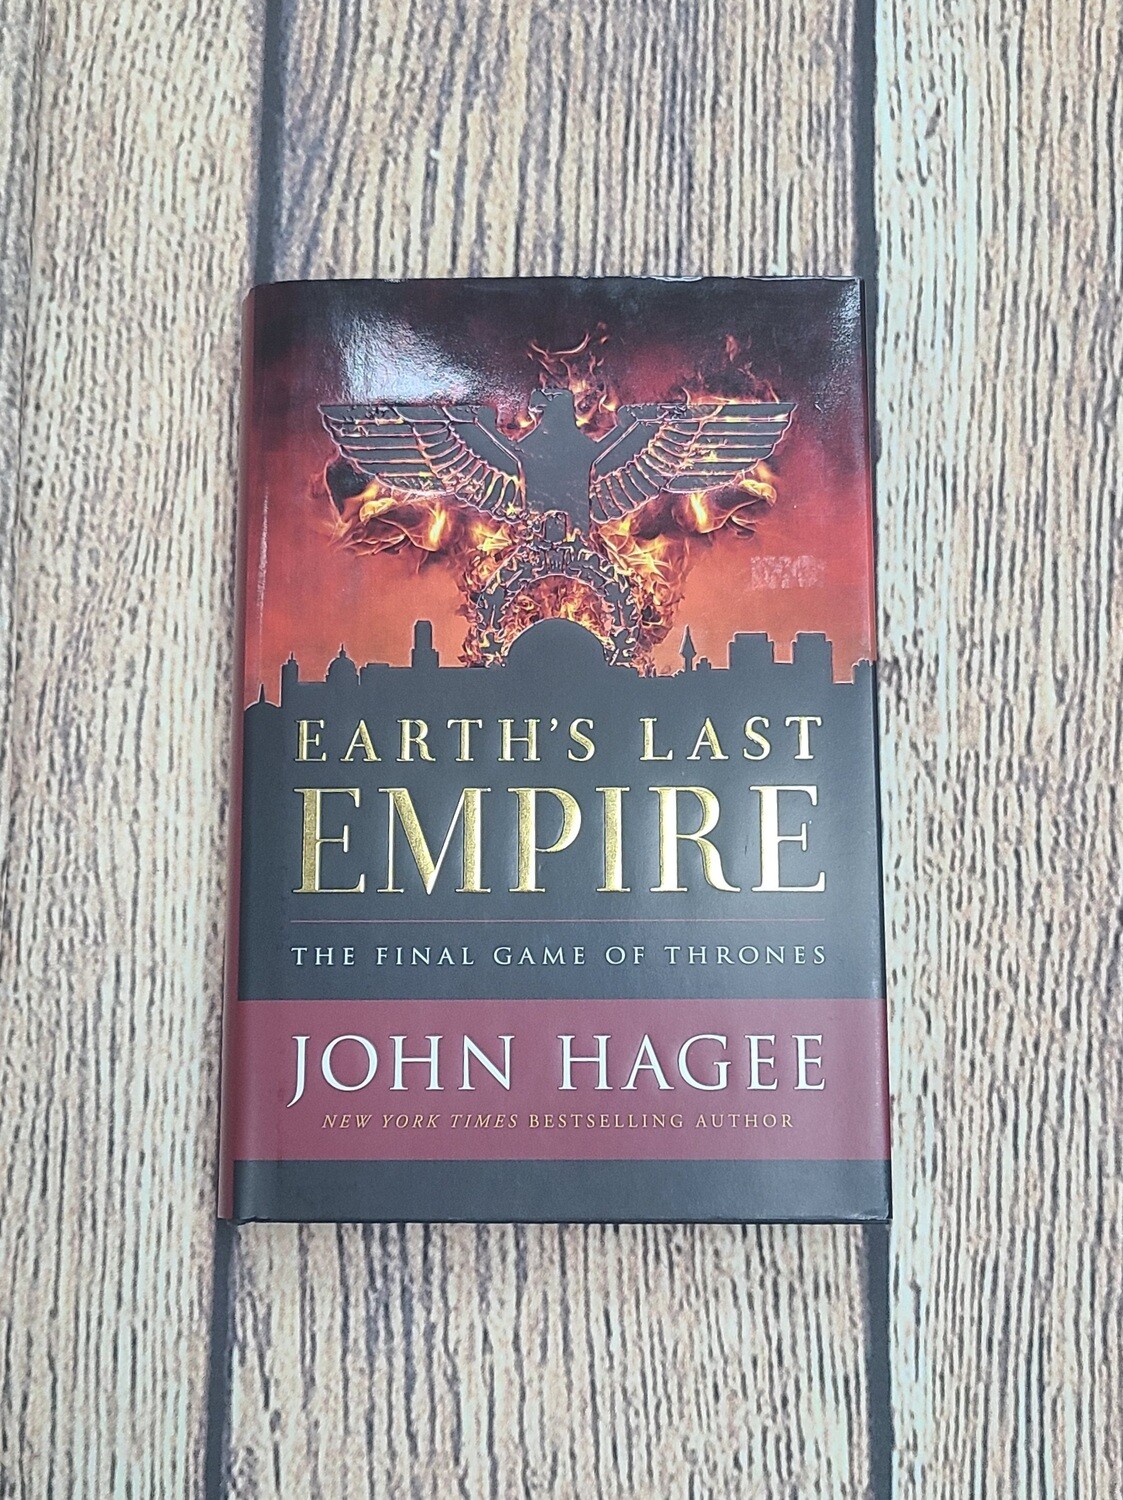 Earth's Last Empire by John Hagee